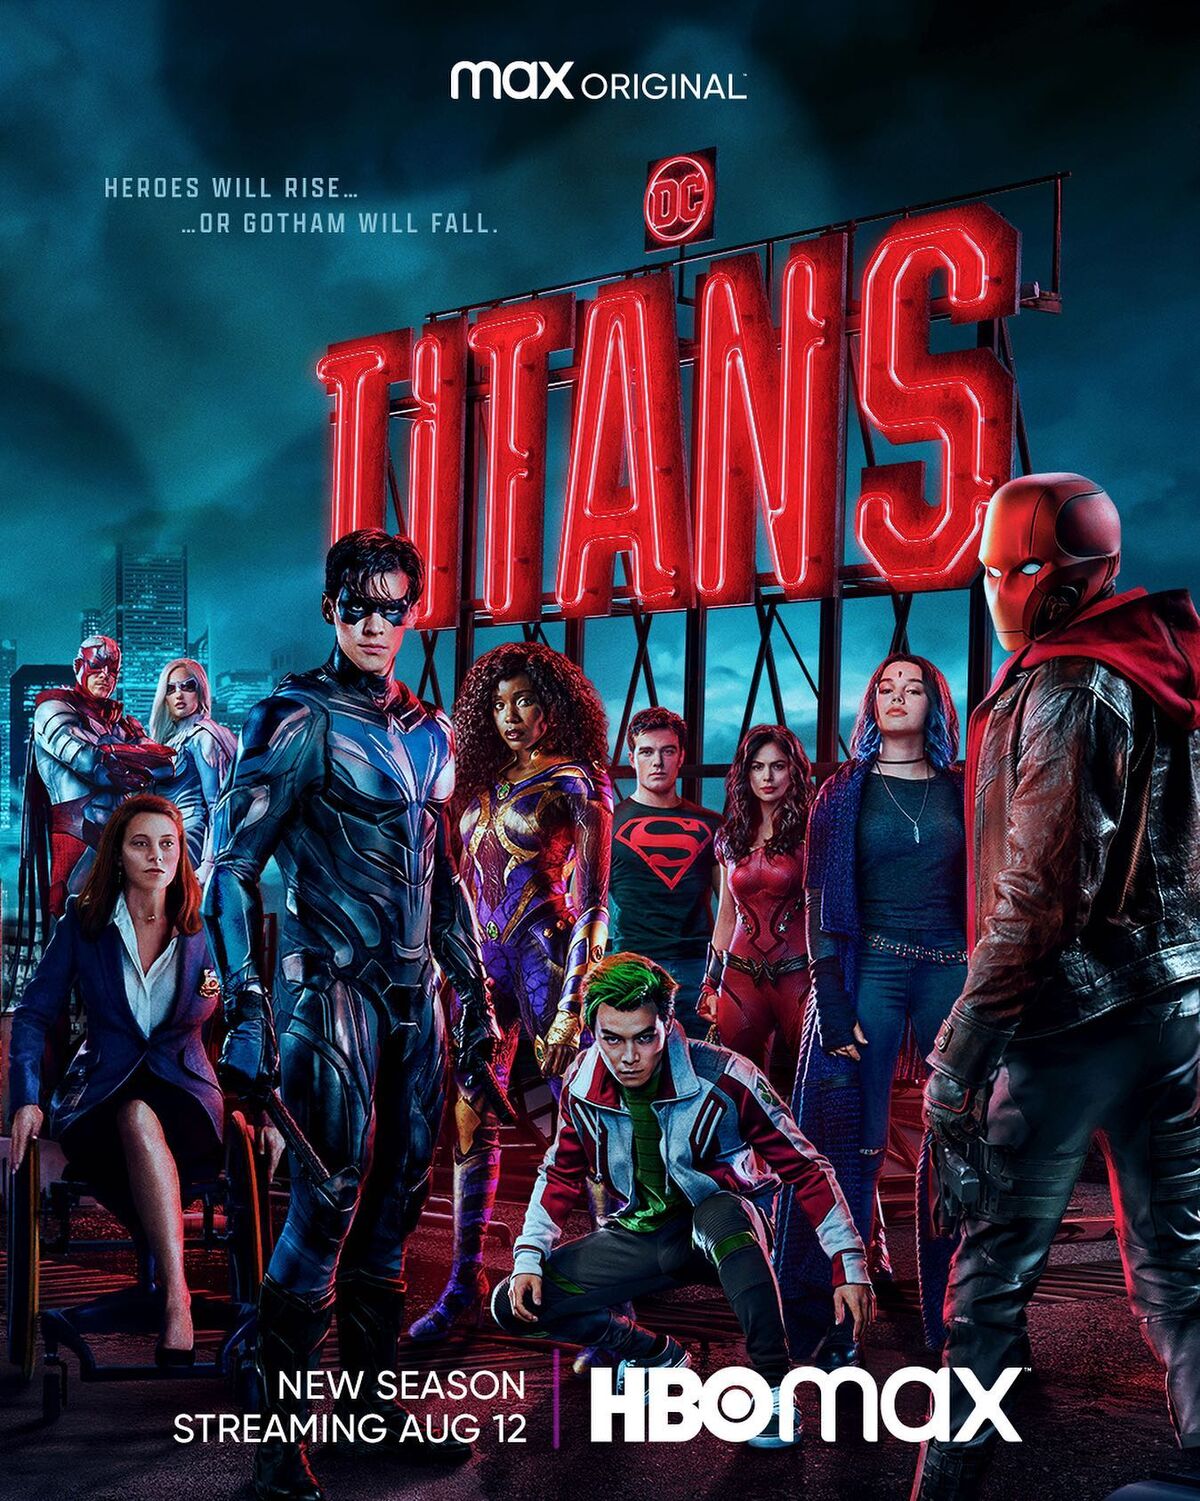 TV Time - Titans (2018) (TVShow Time)